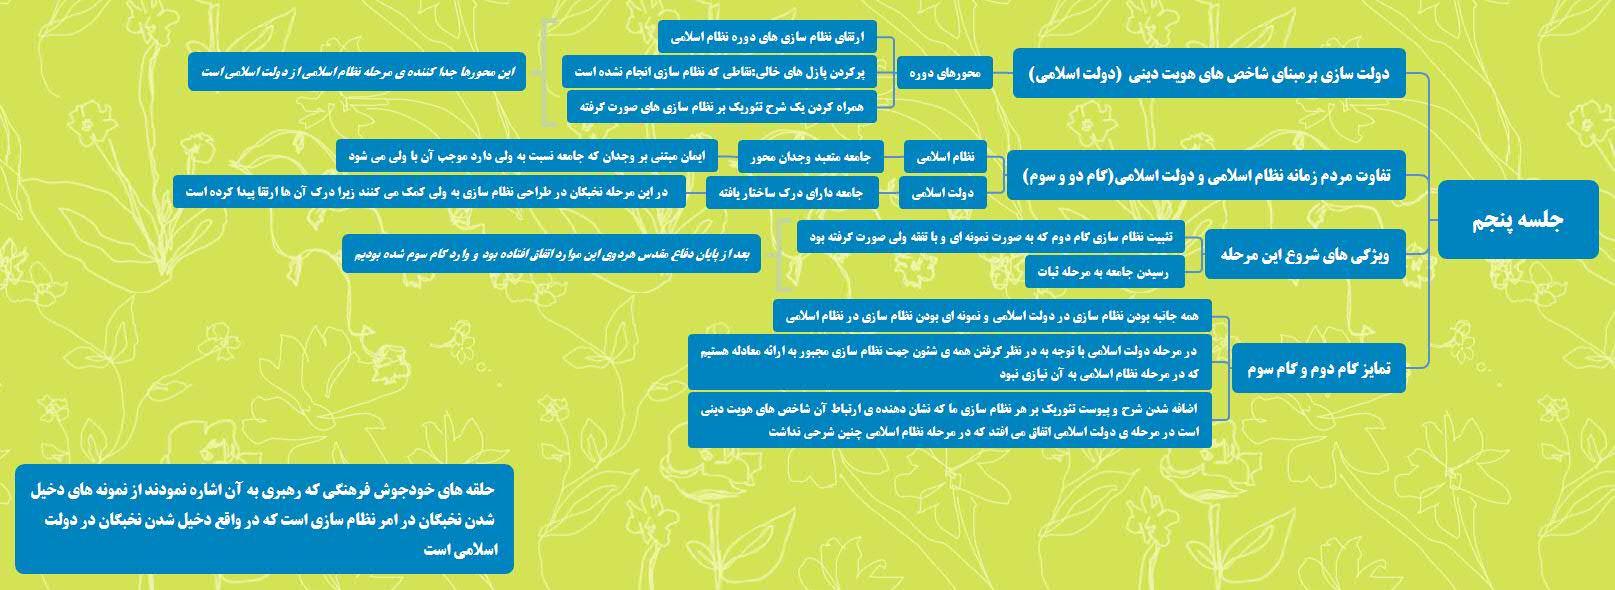 نقشه ذهنی جلسه پنجم دوره جهت حرکت انقلاب اسلامی